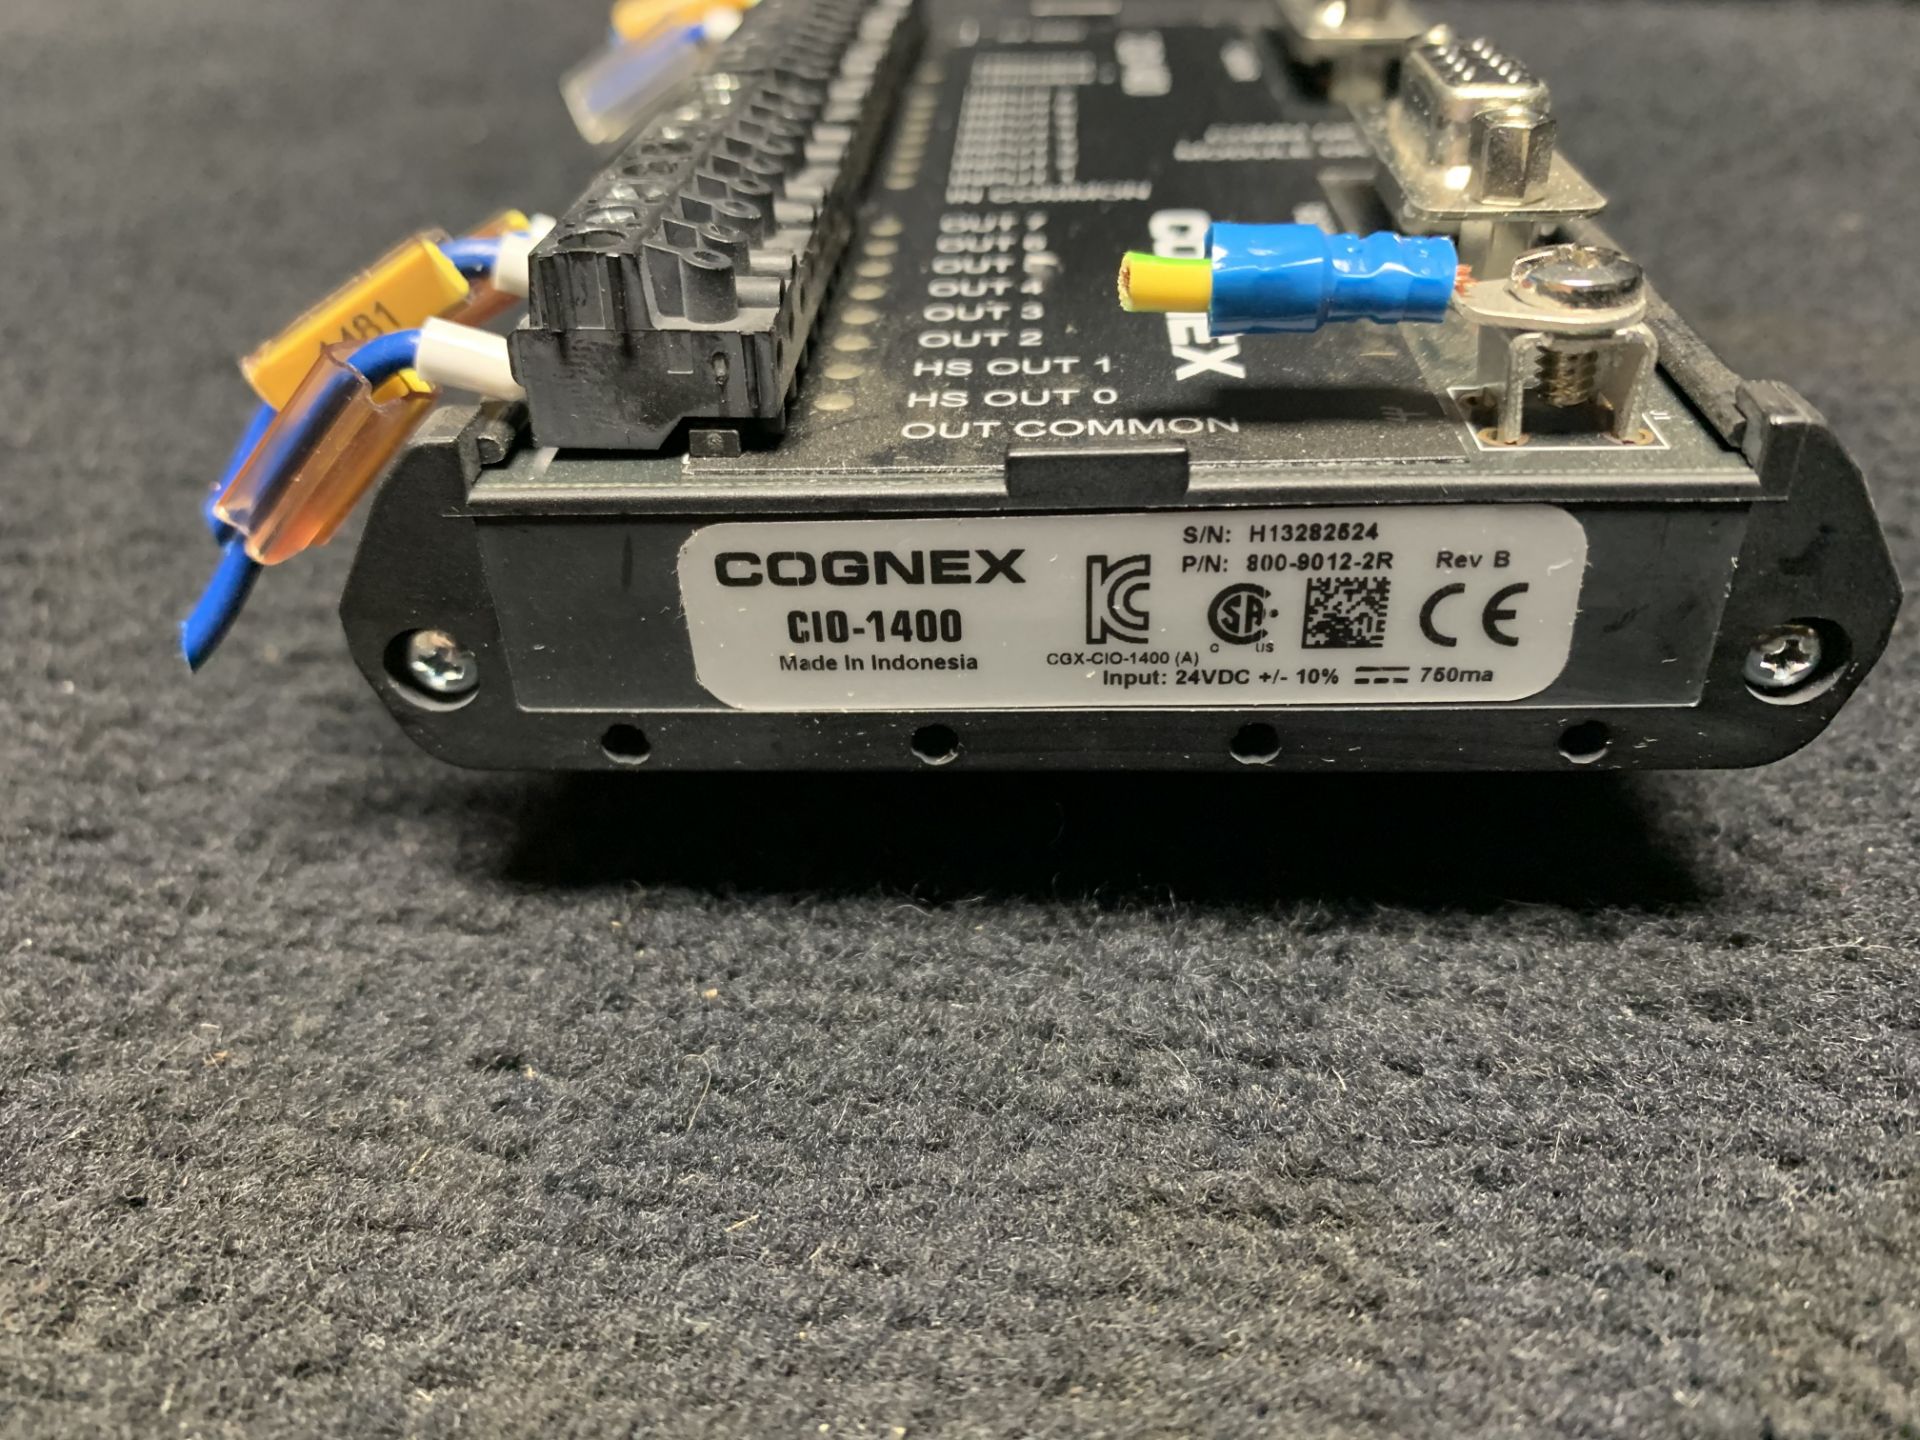 COGNEX DVT CIO-1400 PLC EXPANSION MODULE, 24 VDC 750 MA DIN RAIL MOUNT EXPANSION MODULE 800-9012-2R - Bild 2 aus 7